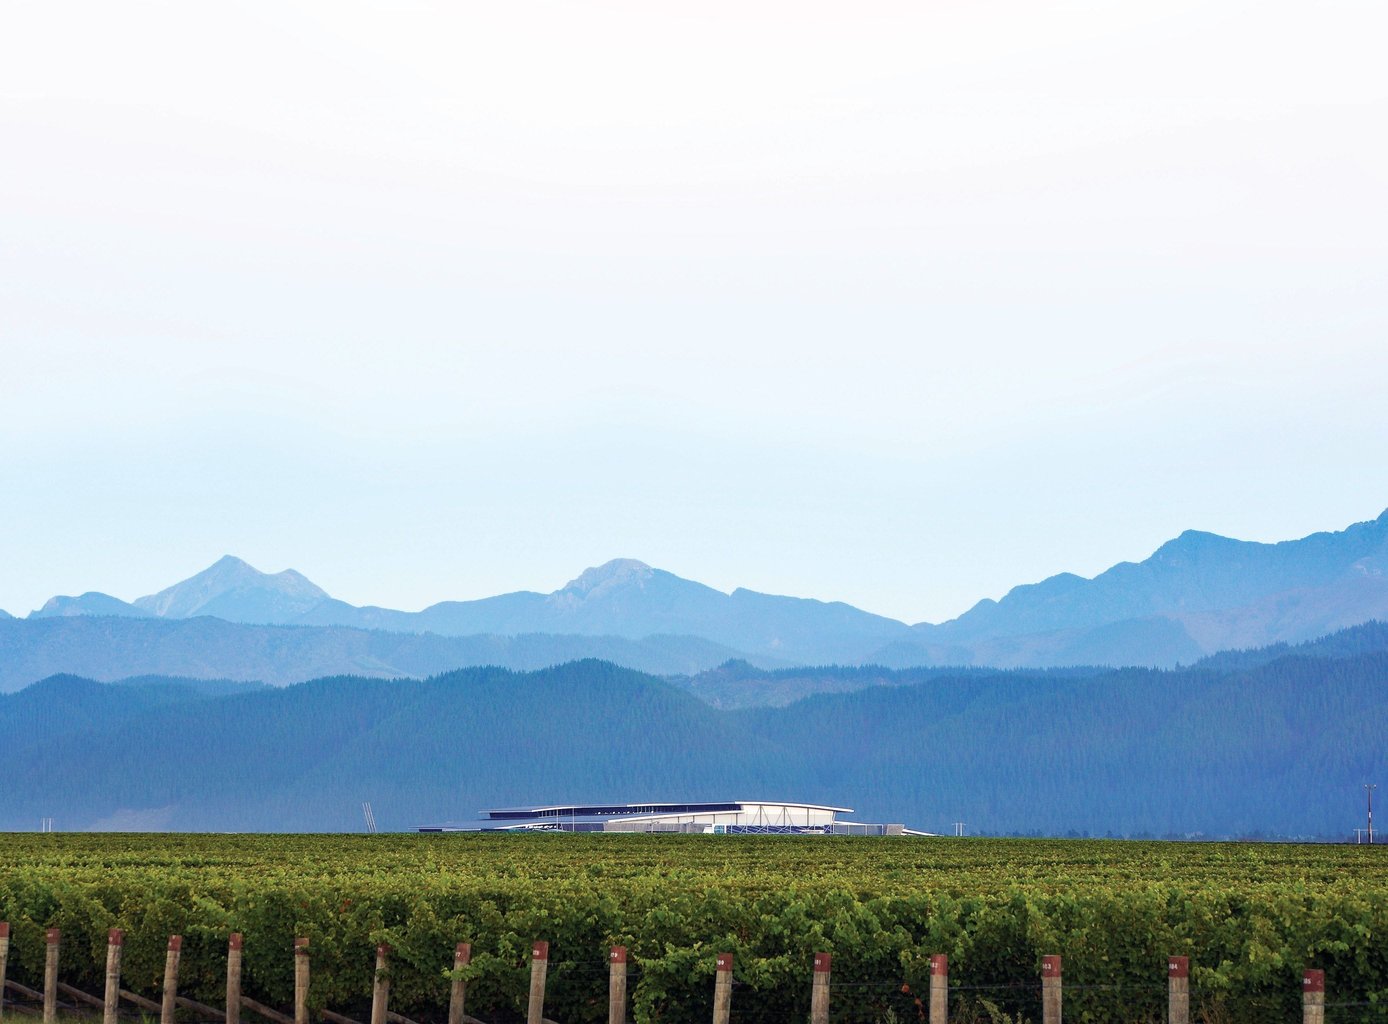 Sustainability view of vineyard